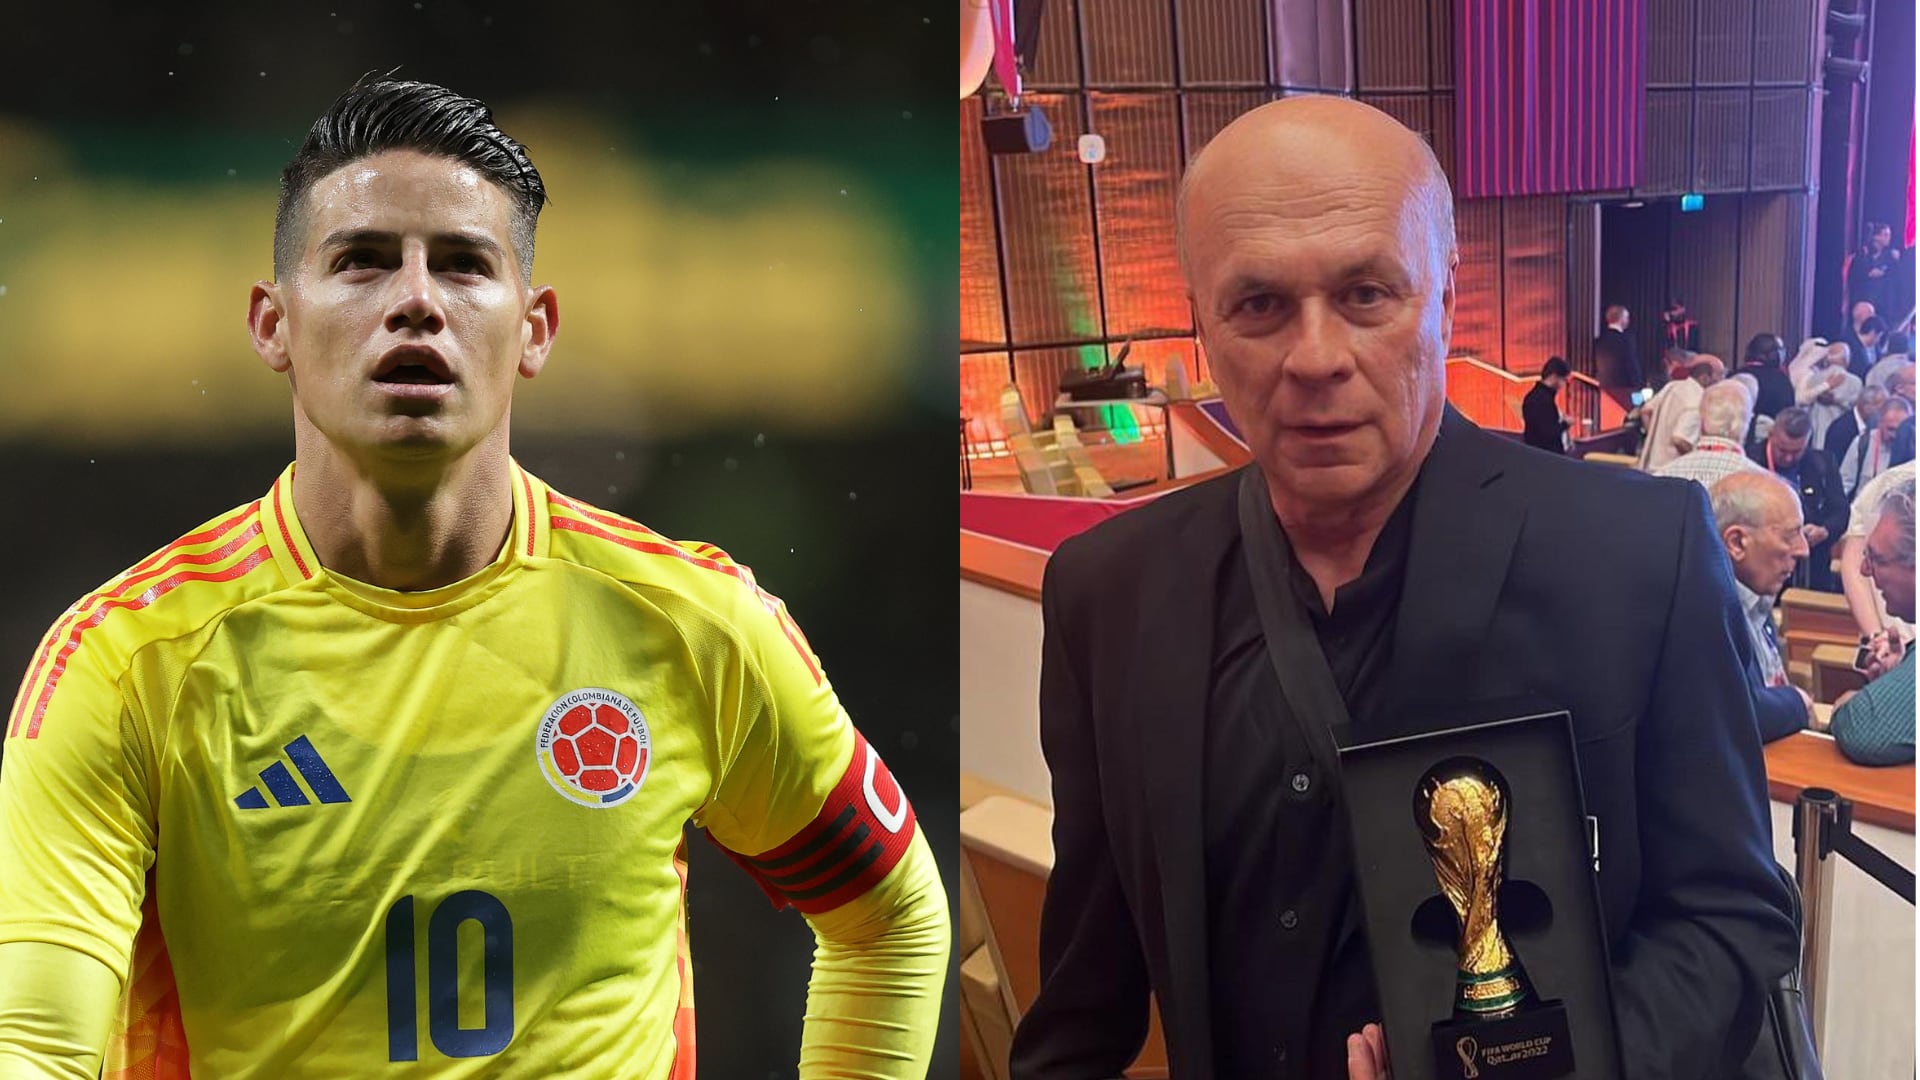 Equipo colombiano mandó indirecta a Carlos Antonio Vélez en mensaje sobre James Rodríguez.